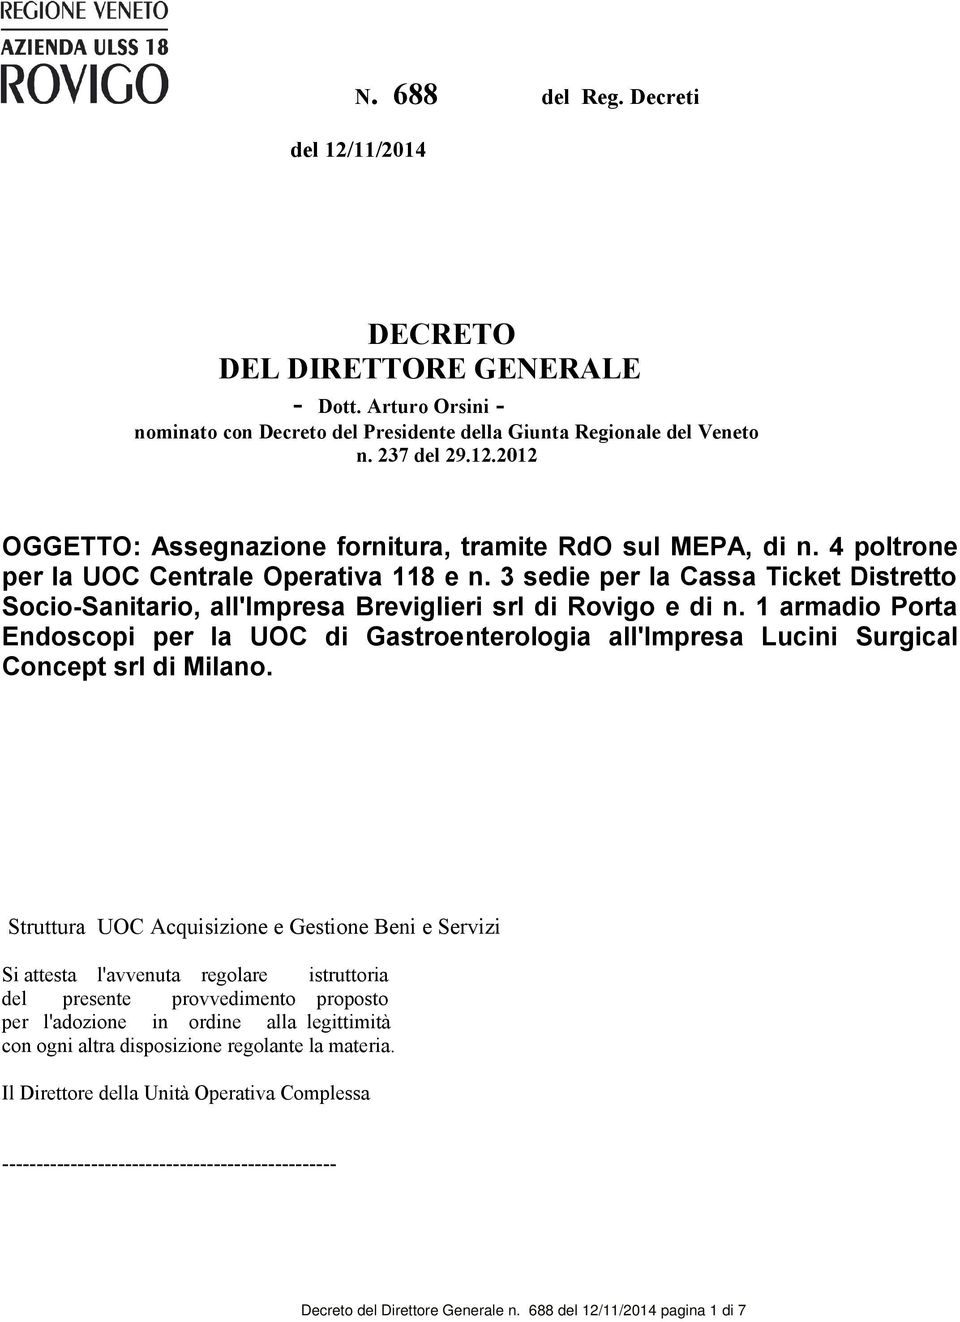 1 armadio Porta Endoscopi per la UOC di Gastroenterologia all'impresa Lucini Surgical Concept srl di Milano.